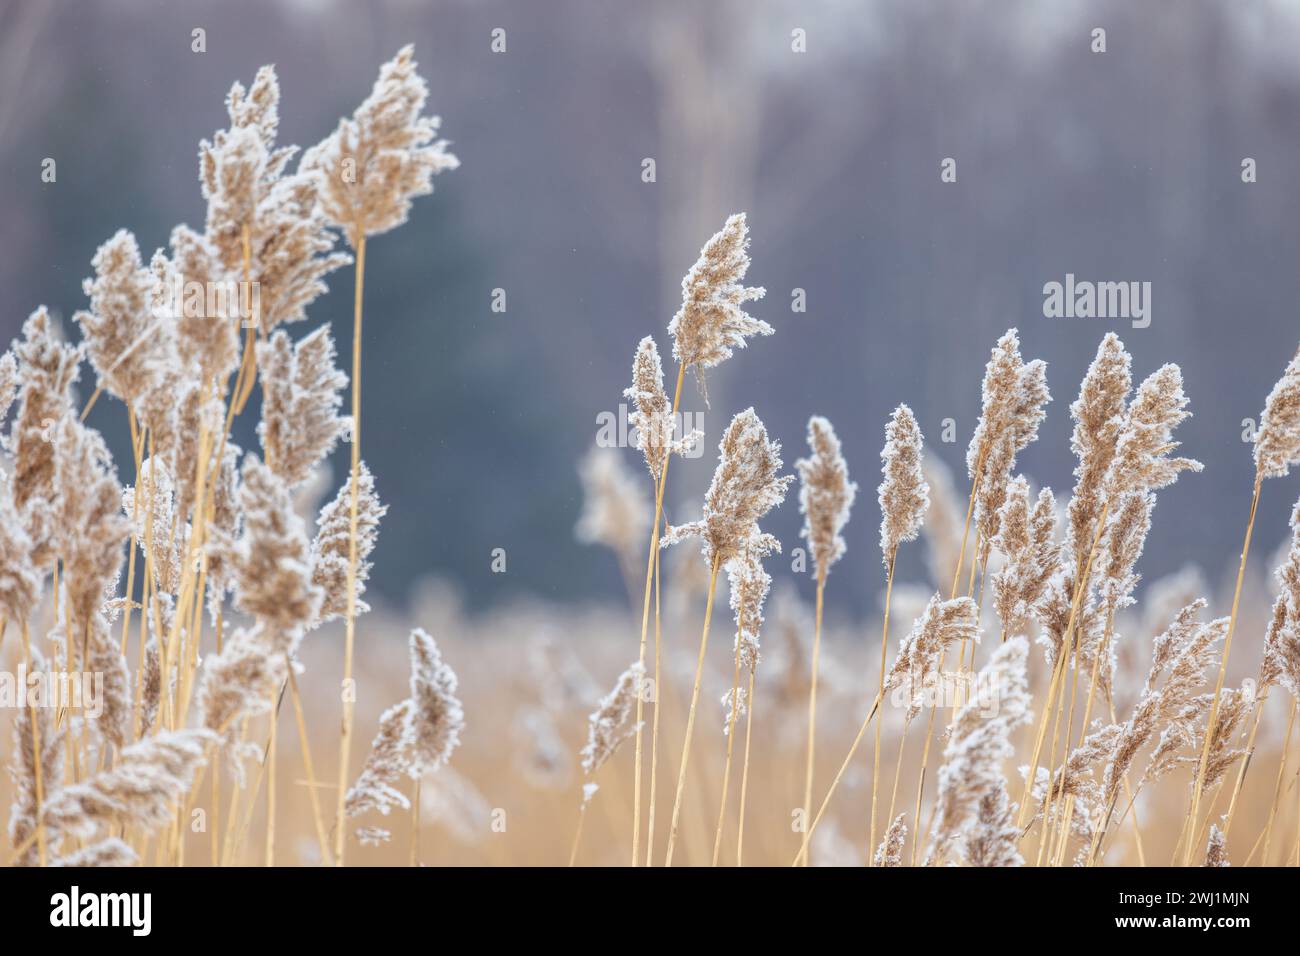 Roseau sec avec de la neige en saison hivernale, vue rapprochée avec mise au point sélective. Photo abstraite de fond naturel prise sur la côte de la mer Baltique gelée Banque D'Images